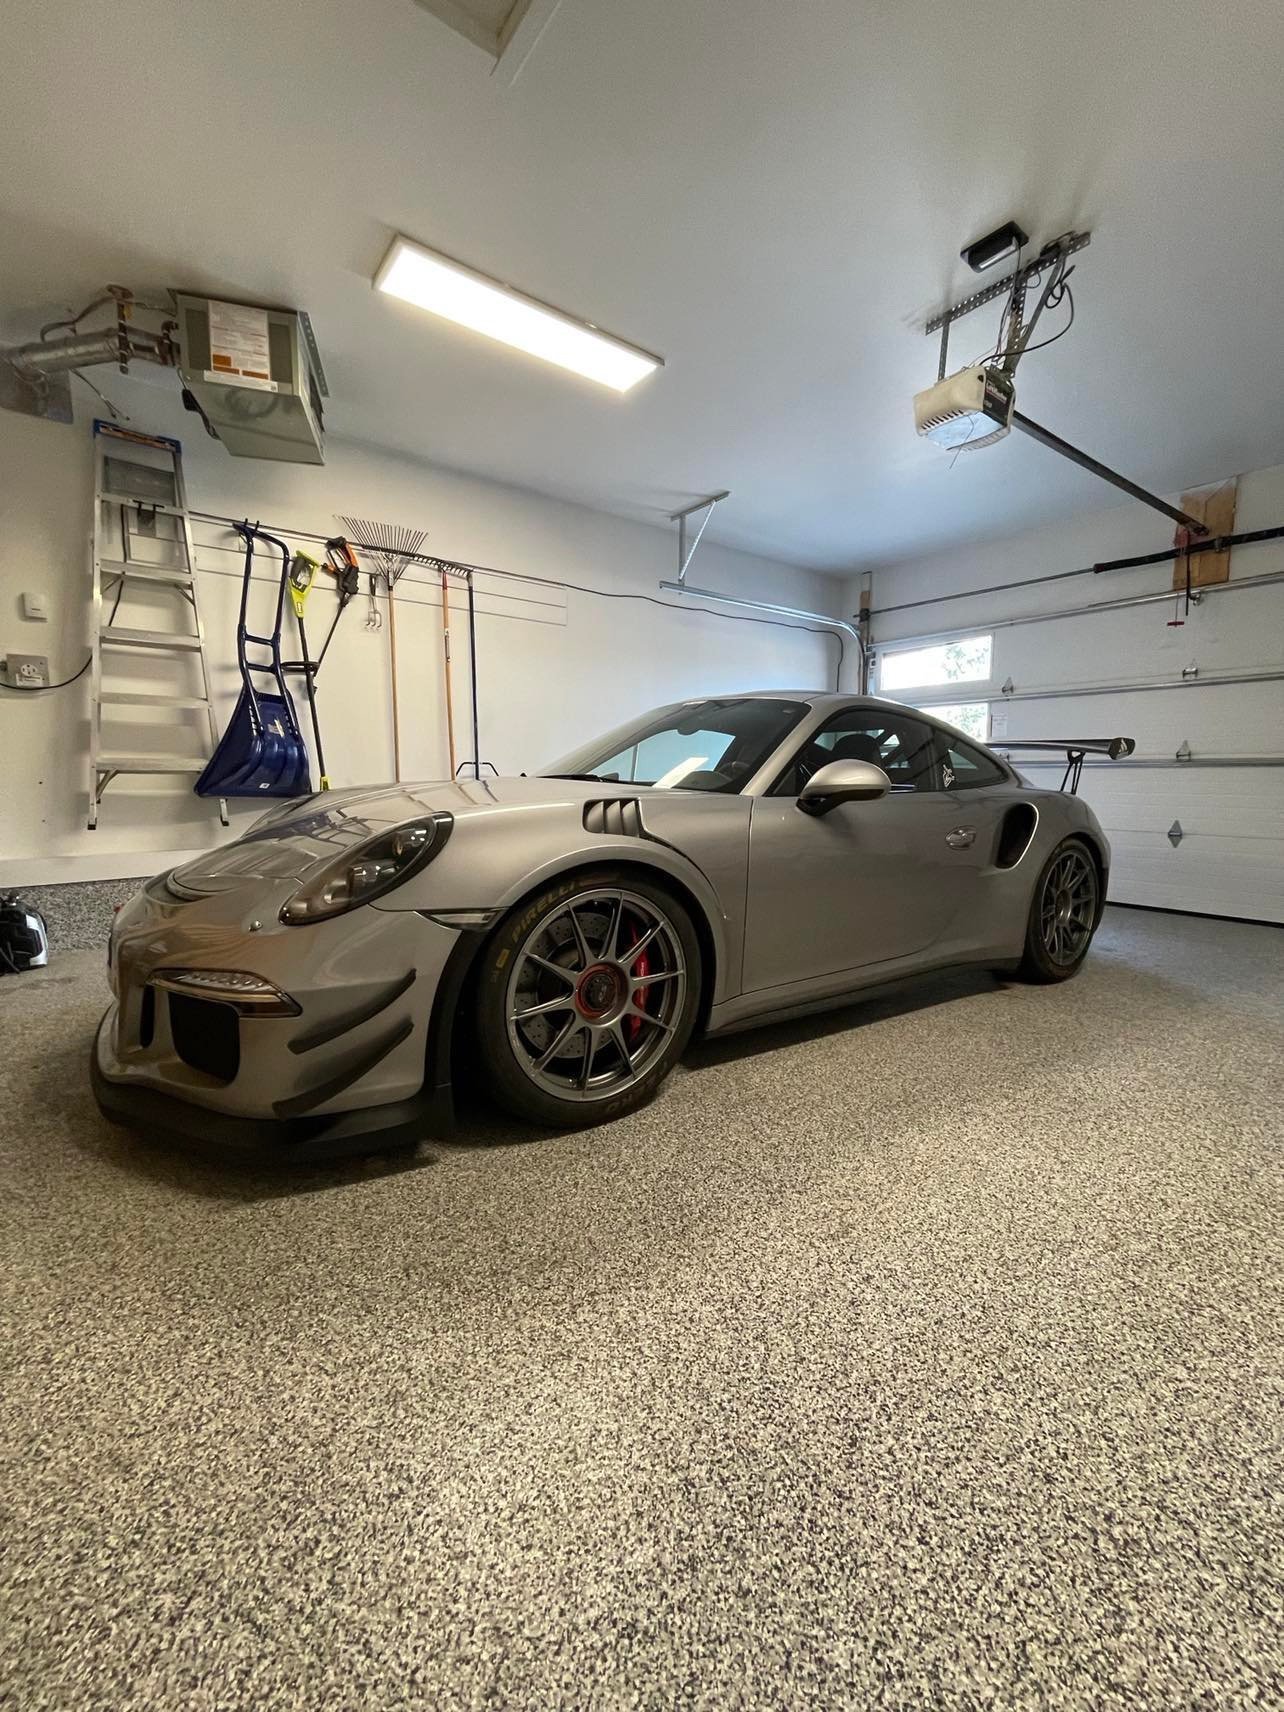 Porsche 991.1 GT3 RS in garage